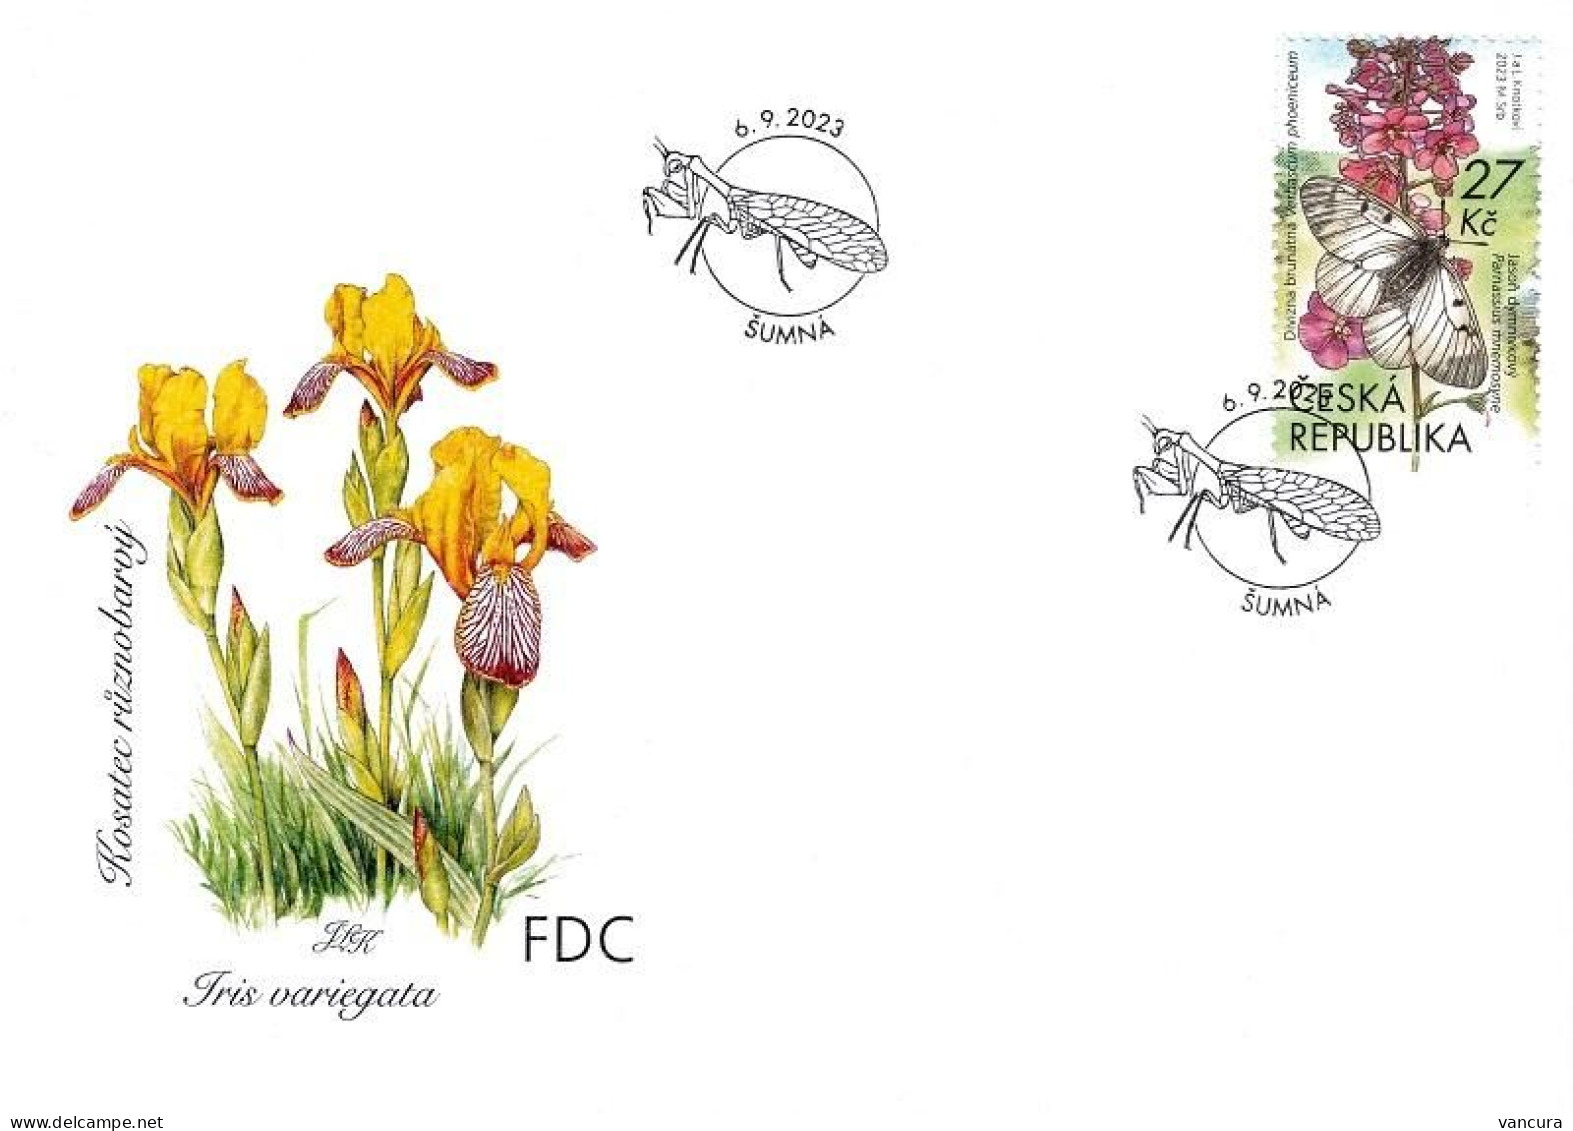 FDC 1222 - 5 Czech Republic Podyjí National Park: 2023 Stag Beetle Snake Orchid - FDC